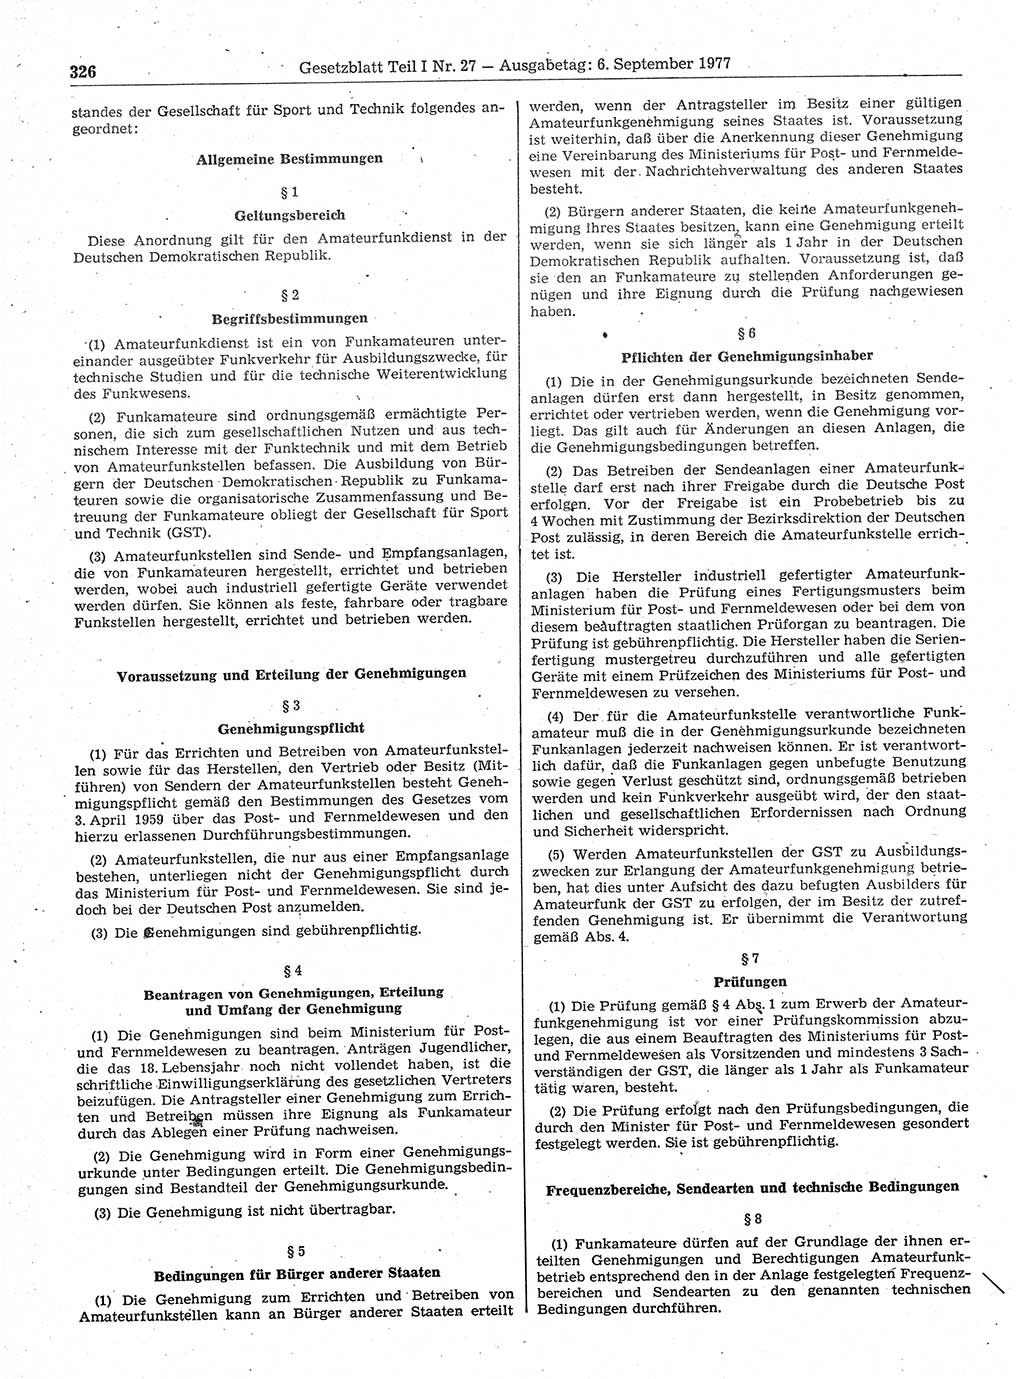 Gesetzblatt (GBl.) der Deutschen Demokratischen Republik (DDR) Teil Ⅰ 1977, Seite 326 (GBl. DDR Ⅰ 1977, S. 326)